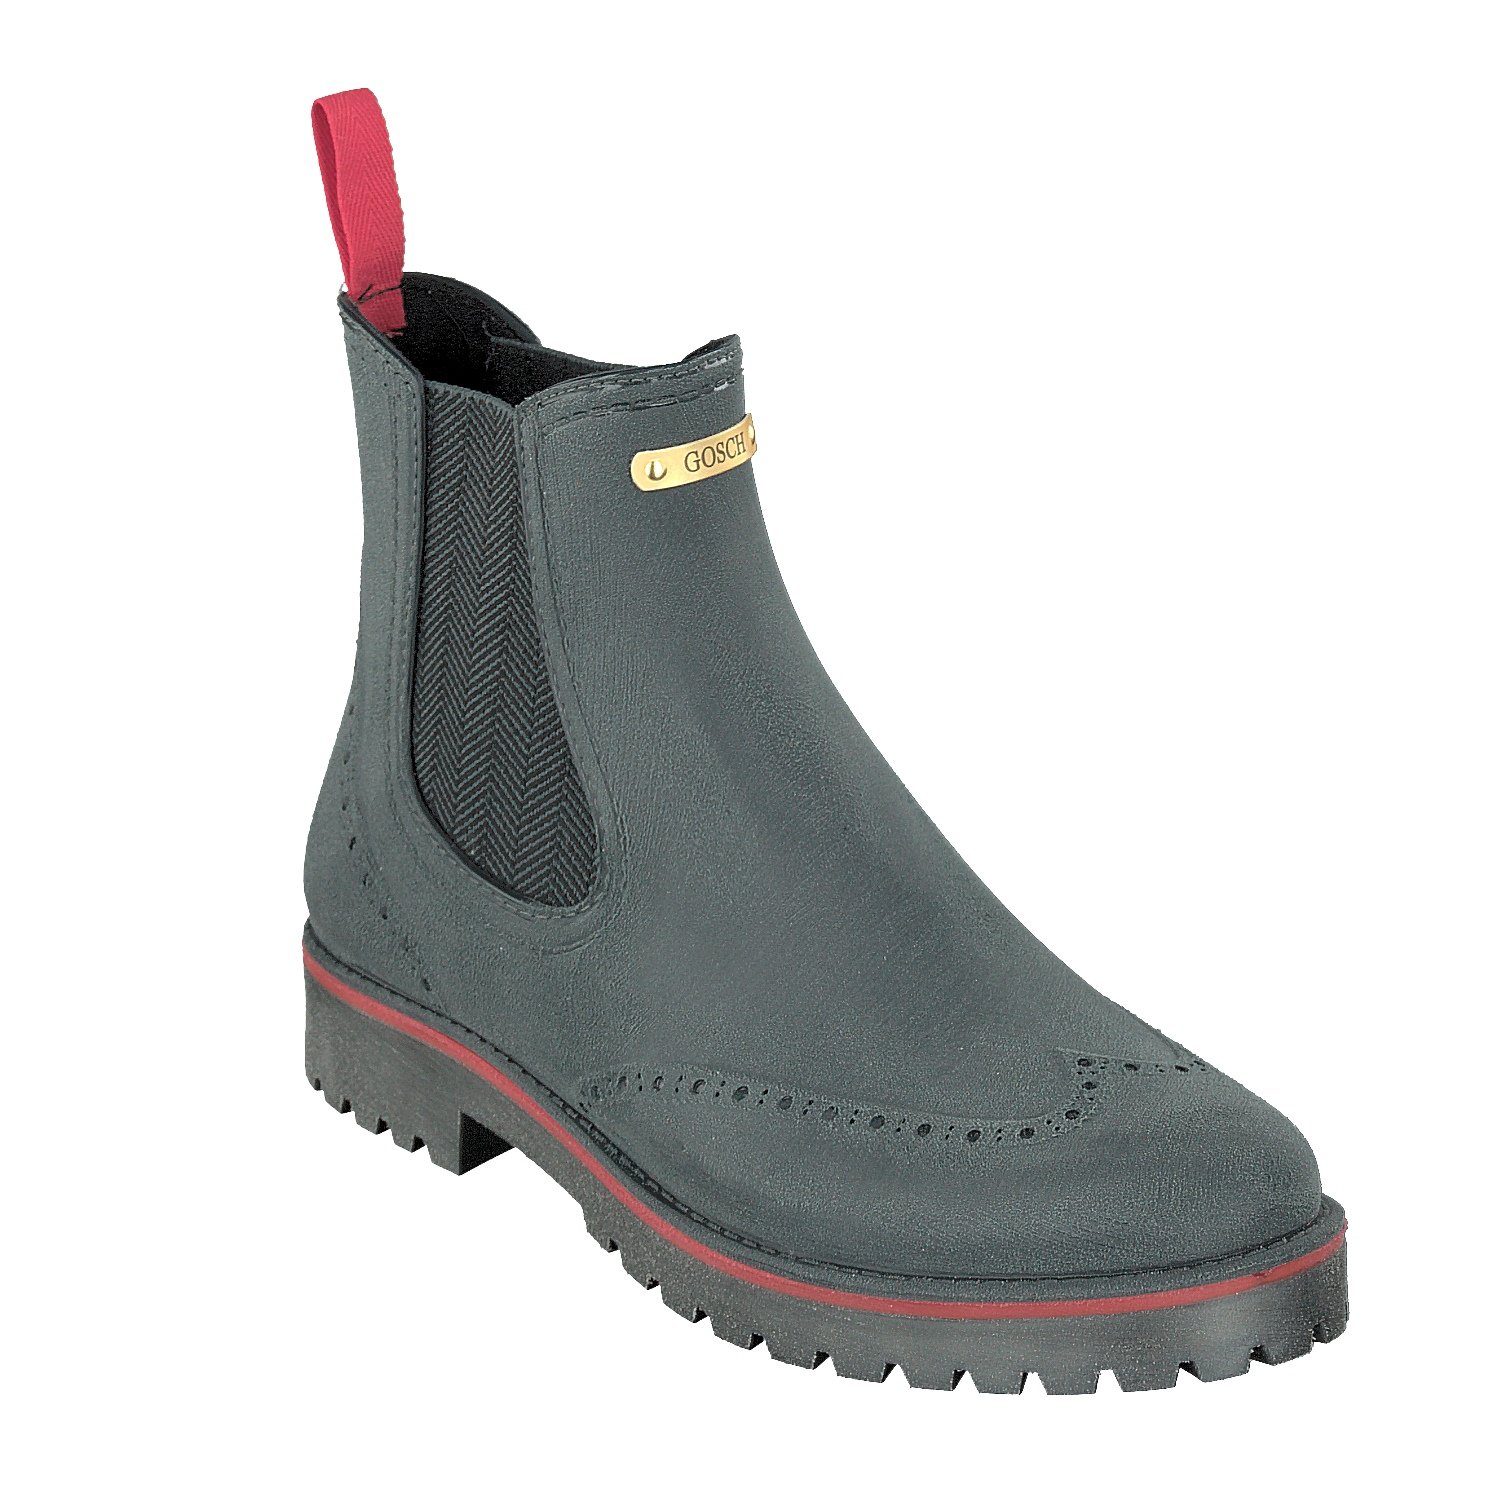 GOSCH SHOES SYLT »Damen Schuhe Gummi Chelsea Stiefel Boots 71051-335B-809  Stahlblau« Gummistiefel online kaufen | OTTO